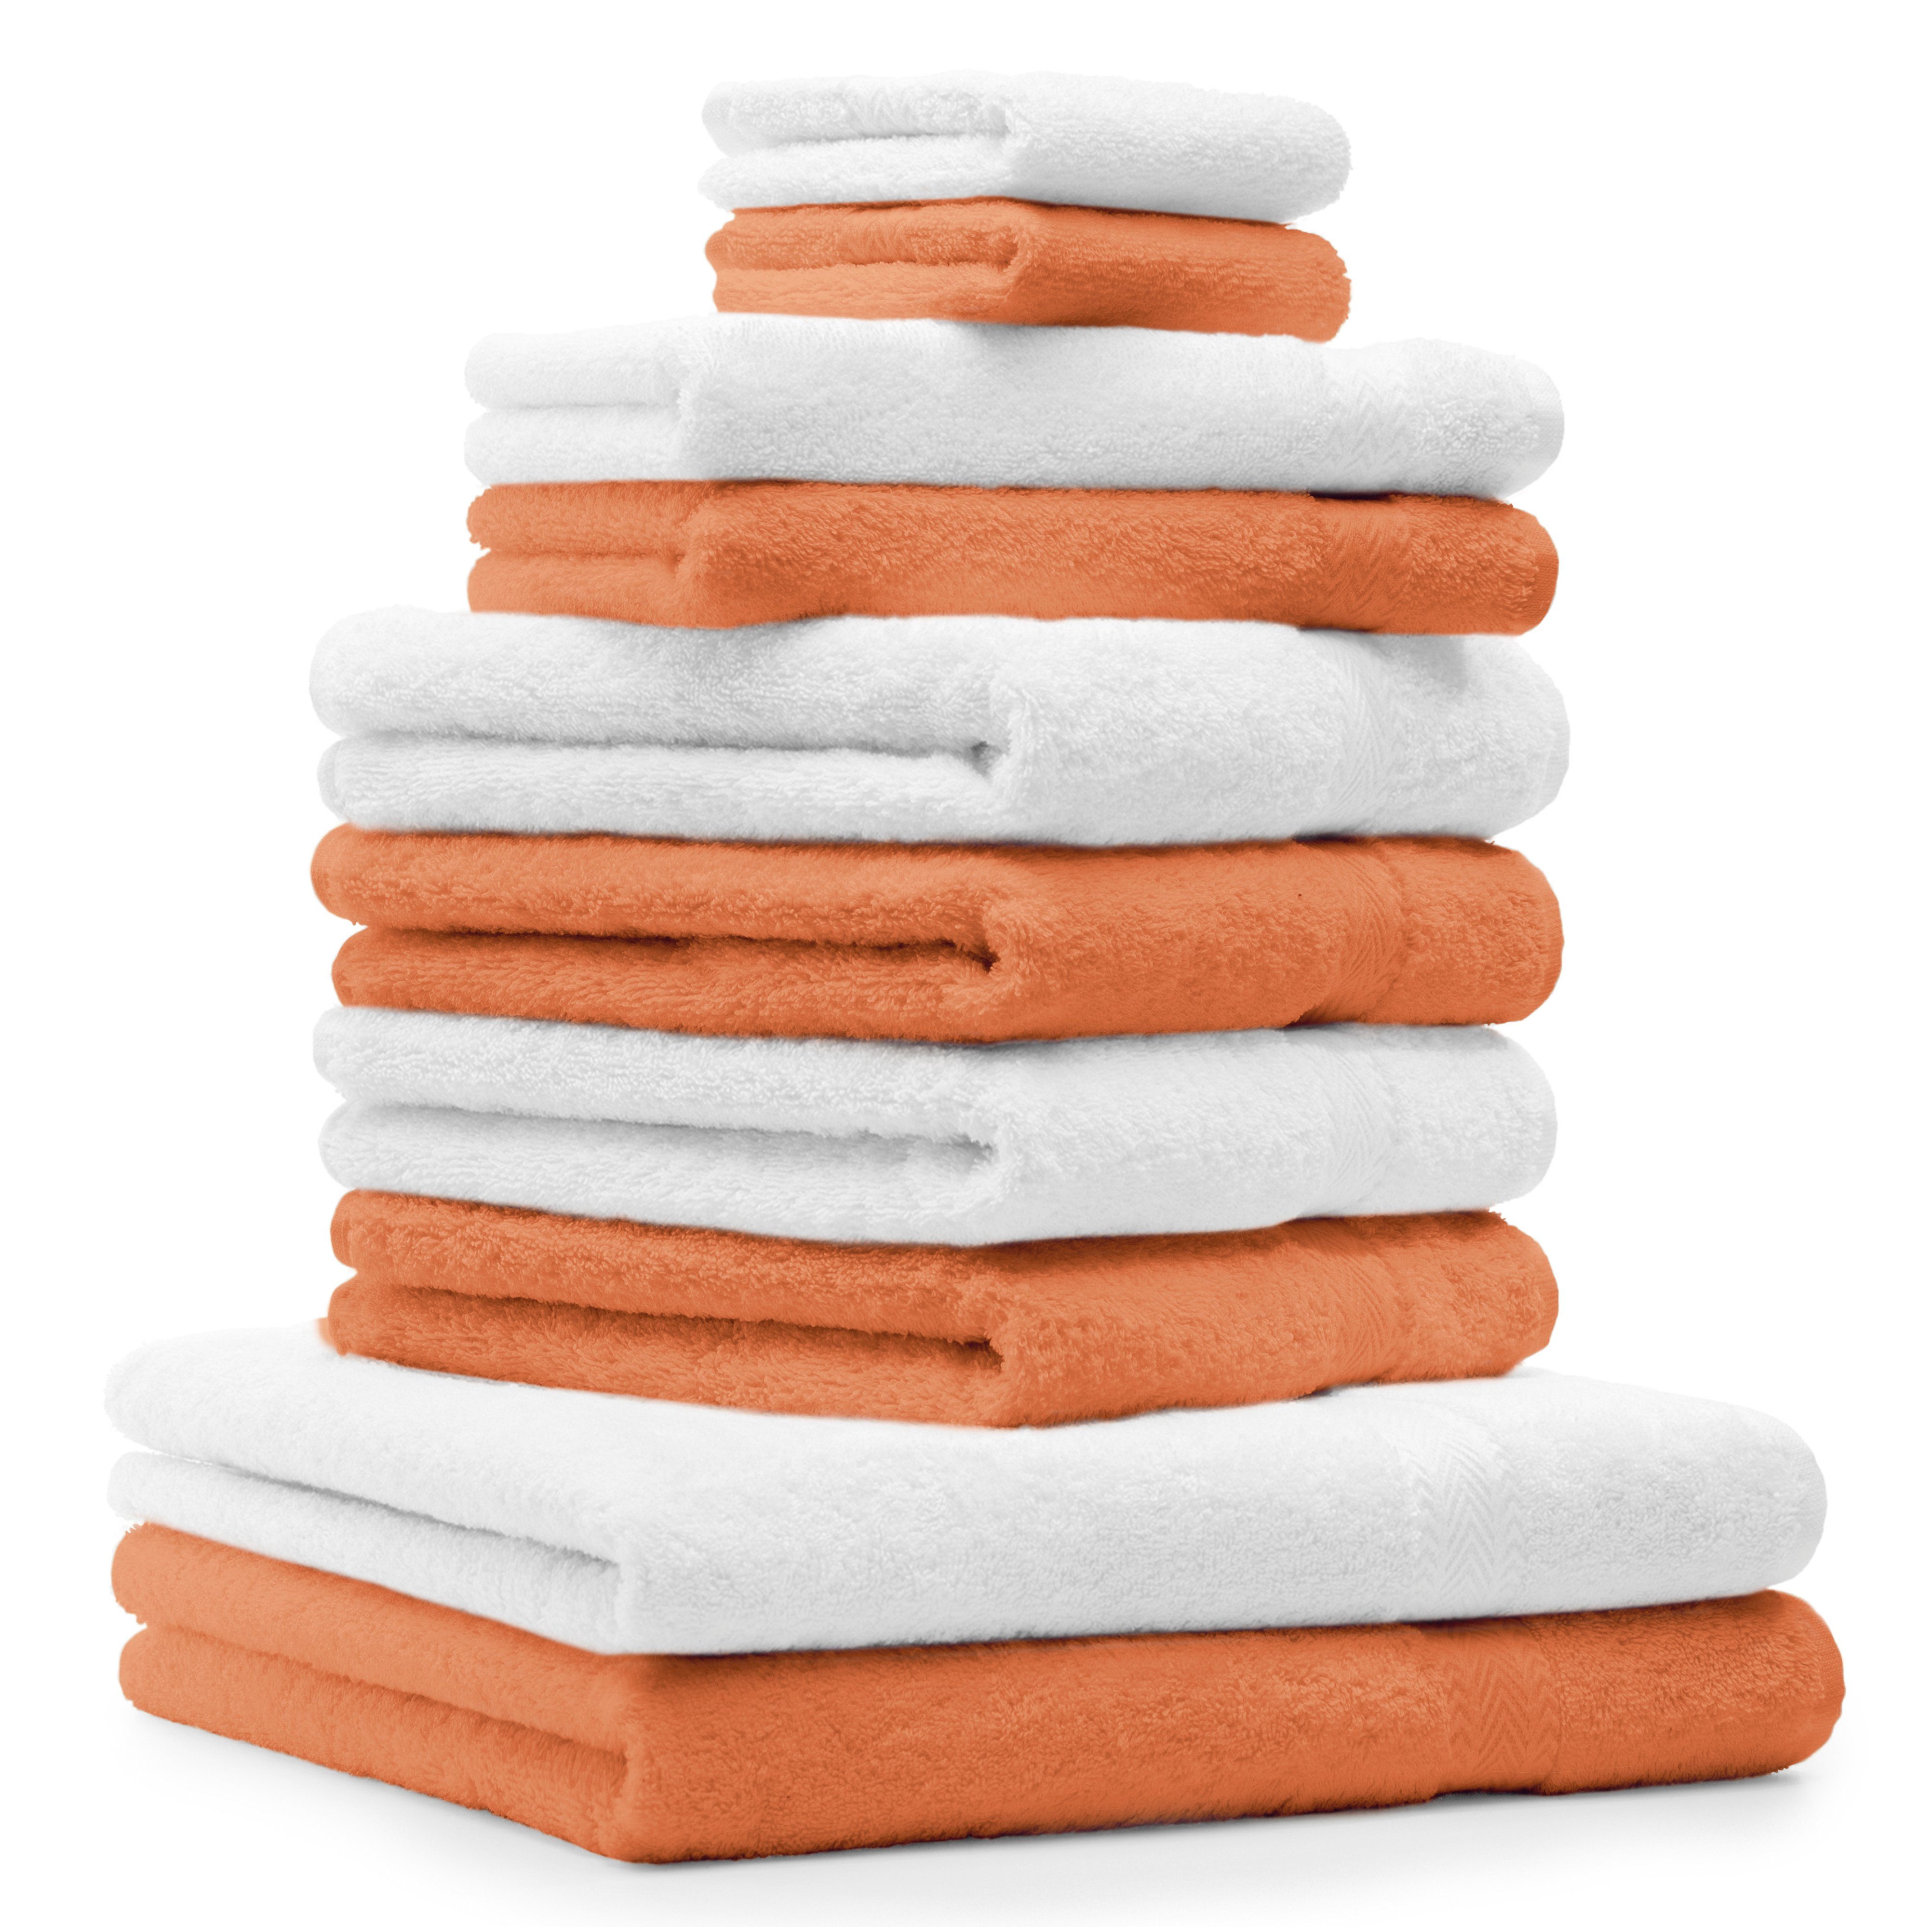 Betz Handtuch Set 10-TLG. Handtuch-Set Premium Farbe Orange & Weiß, 100% Baumwolle, (10-tlg)